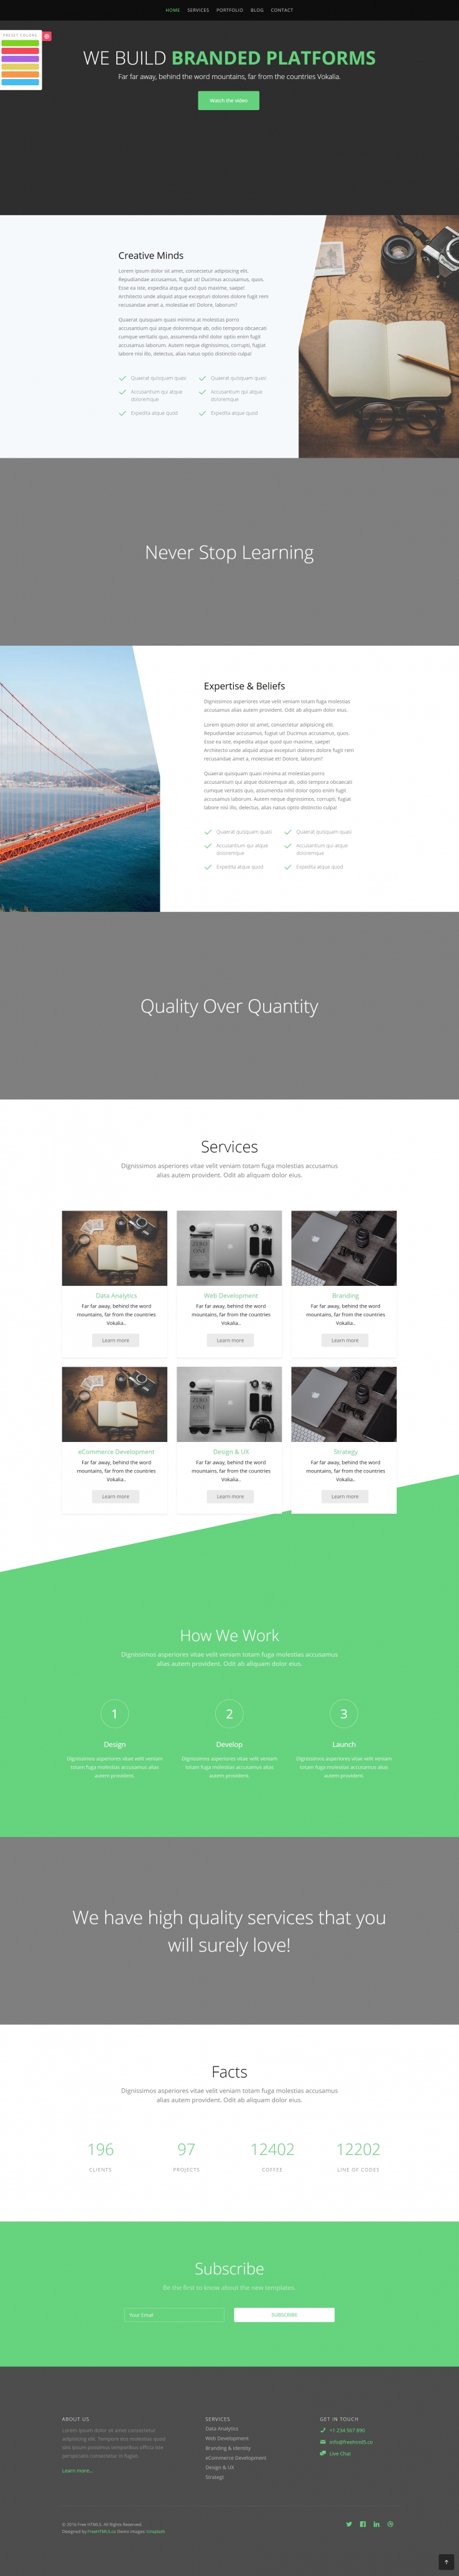 绿色欧美风格响应式企业品牌动态网页模板